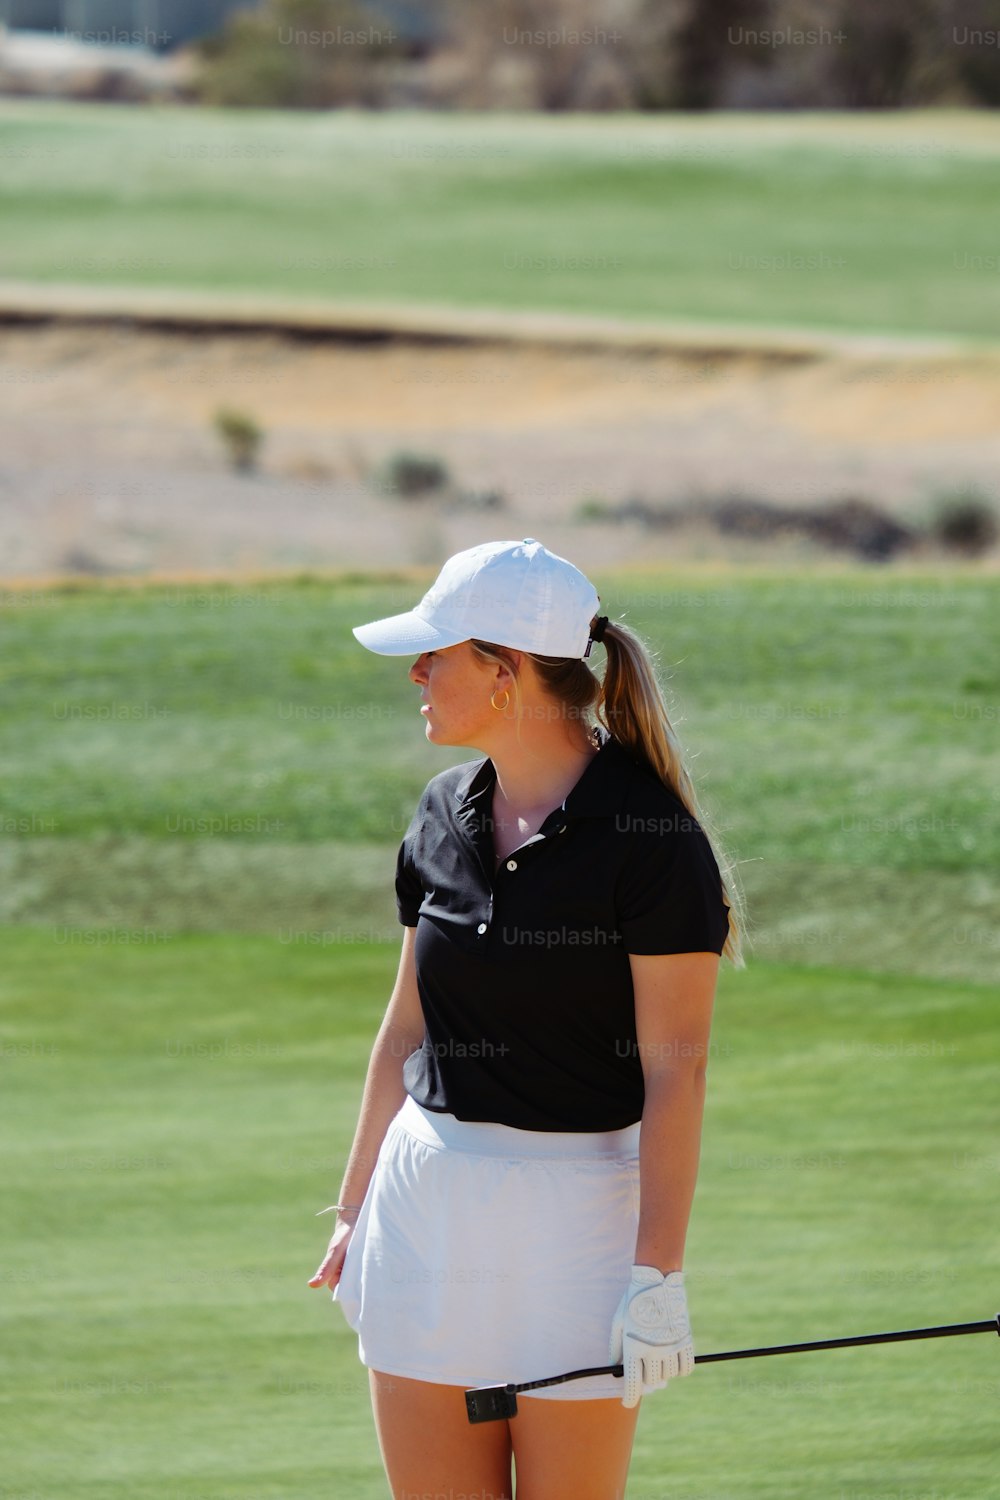 Una donna in piedi su un campo da golf con in mano una mazza da golf